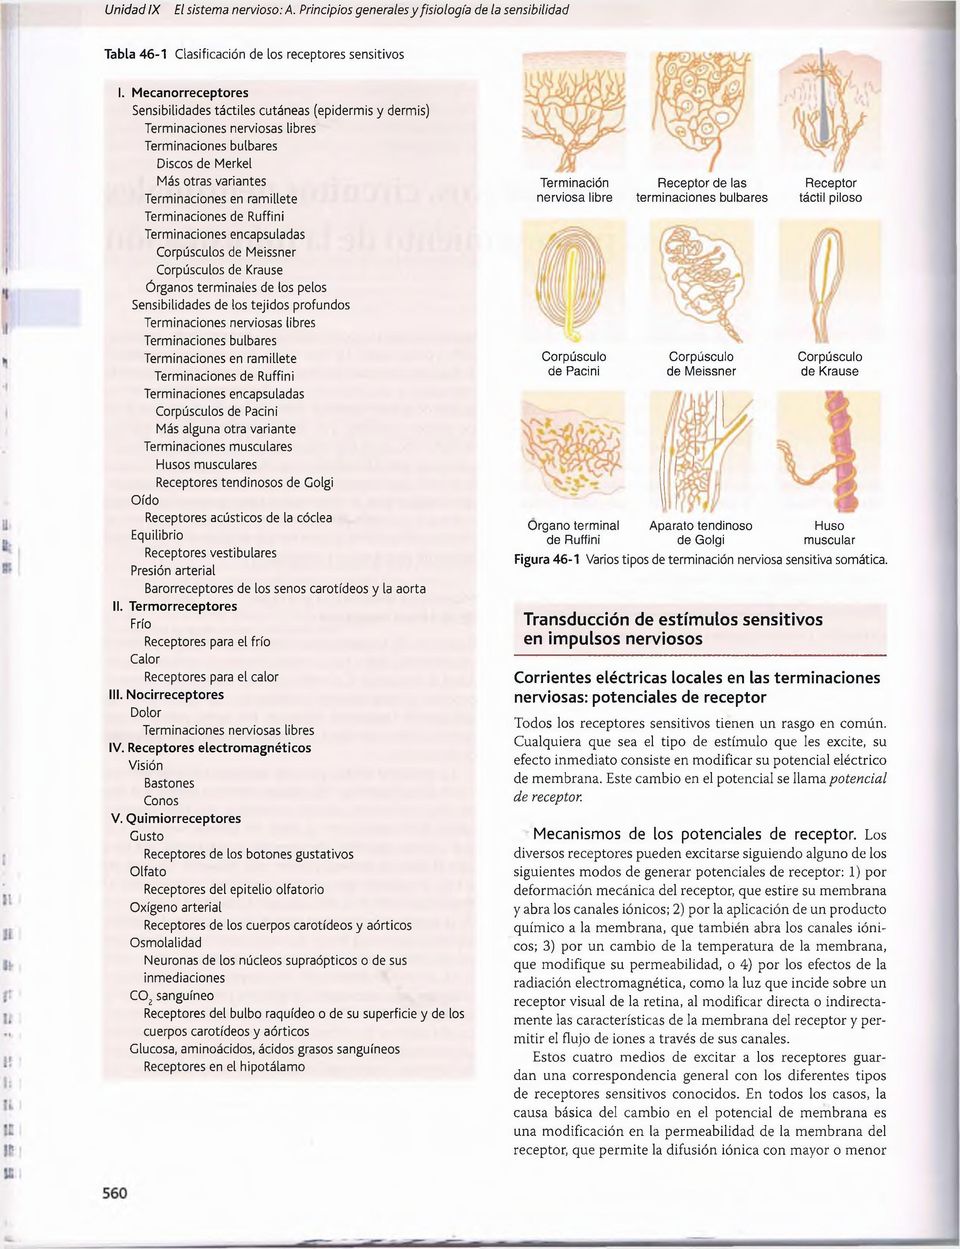 Terminaciones de Ruffini Terminaciones encapsuladas Corpúsculos de Meissner Corpúsculos de Krause Órganos terminales de los pelos Sensibilidades de los tejidos profundos Terminaciones nerviosas